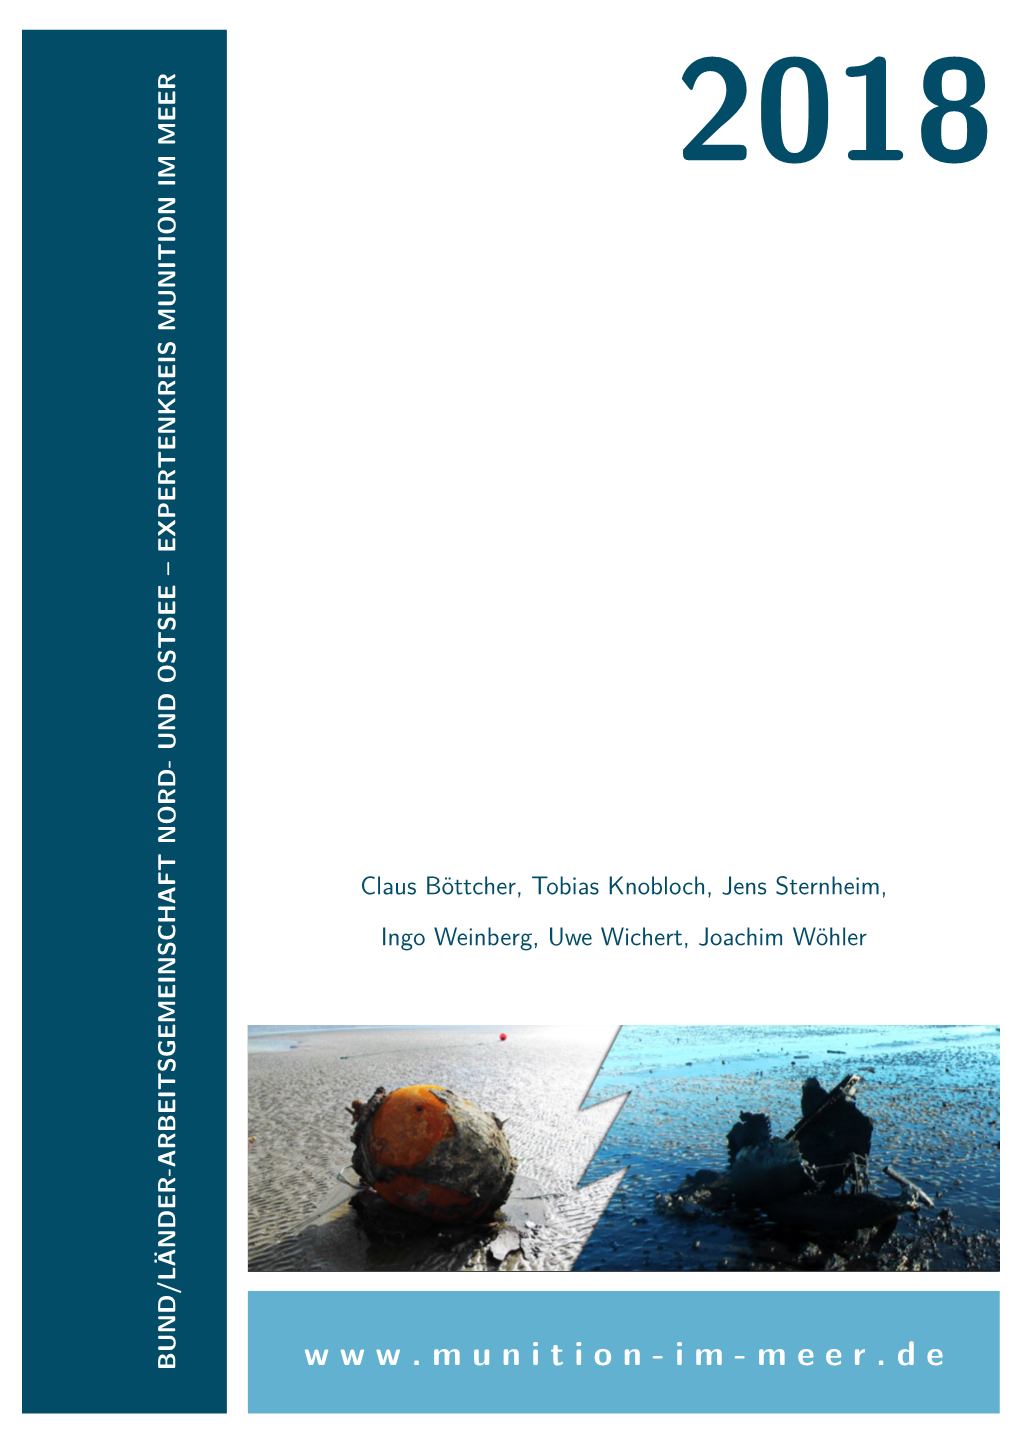 Munitionsbelastung Der Deutschen Meeresgewässer – Bestandsaufnahme Und Empfehlungen (Jahr 2011)“